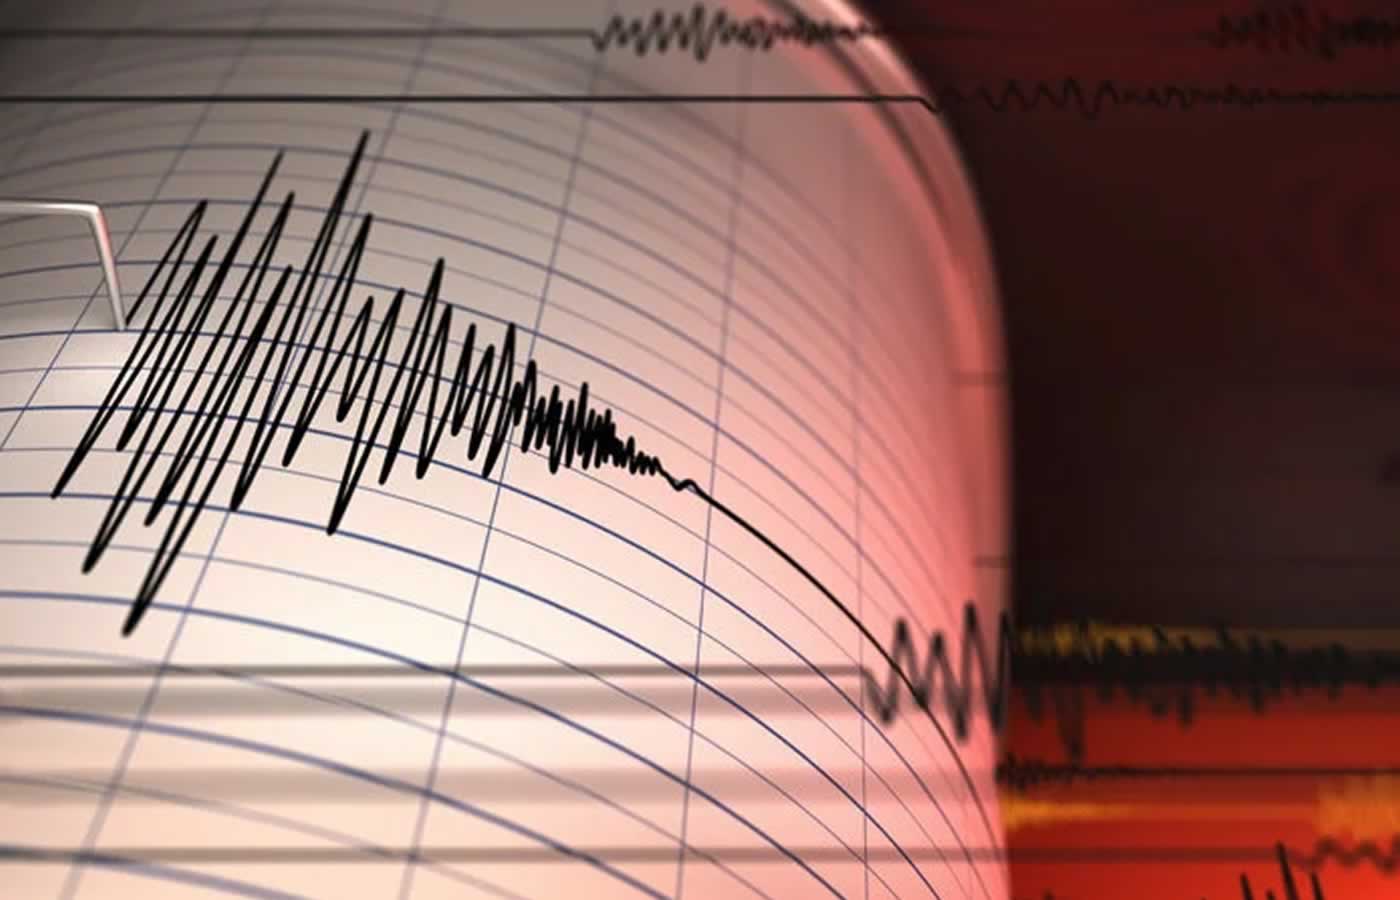 Ισχυρός σεισμός 5,4 ρίχτερ ανάμεσα σε Ζάκυνθο και Κεφαλονιά ξύπνησε μνήμες άσχημες στα νησιά του Ιονίου, αφού ο σεισμός ήταν ισχυρός